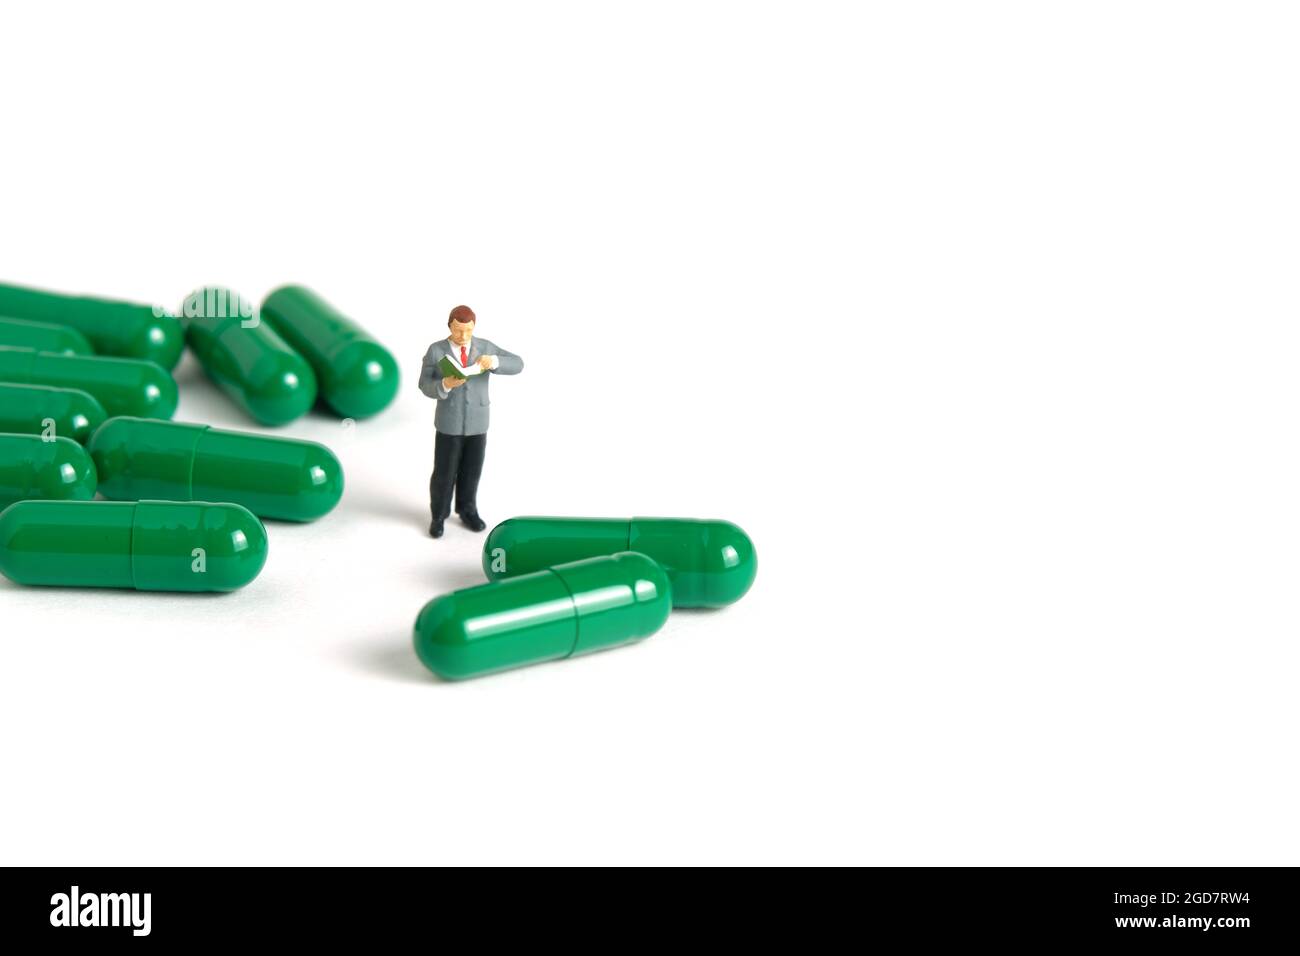 Miniatur Menschen Spielzeug Figur Fotografie. Ein männler Student, der mitten in der Medikamentenpille steht und die Zutat liest. Bildfoto Stockfoto